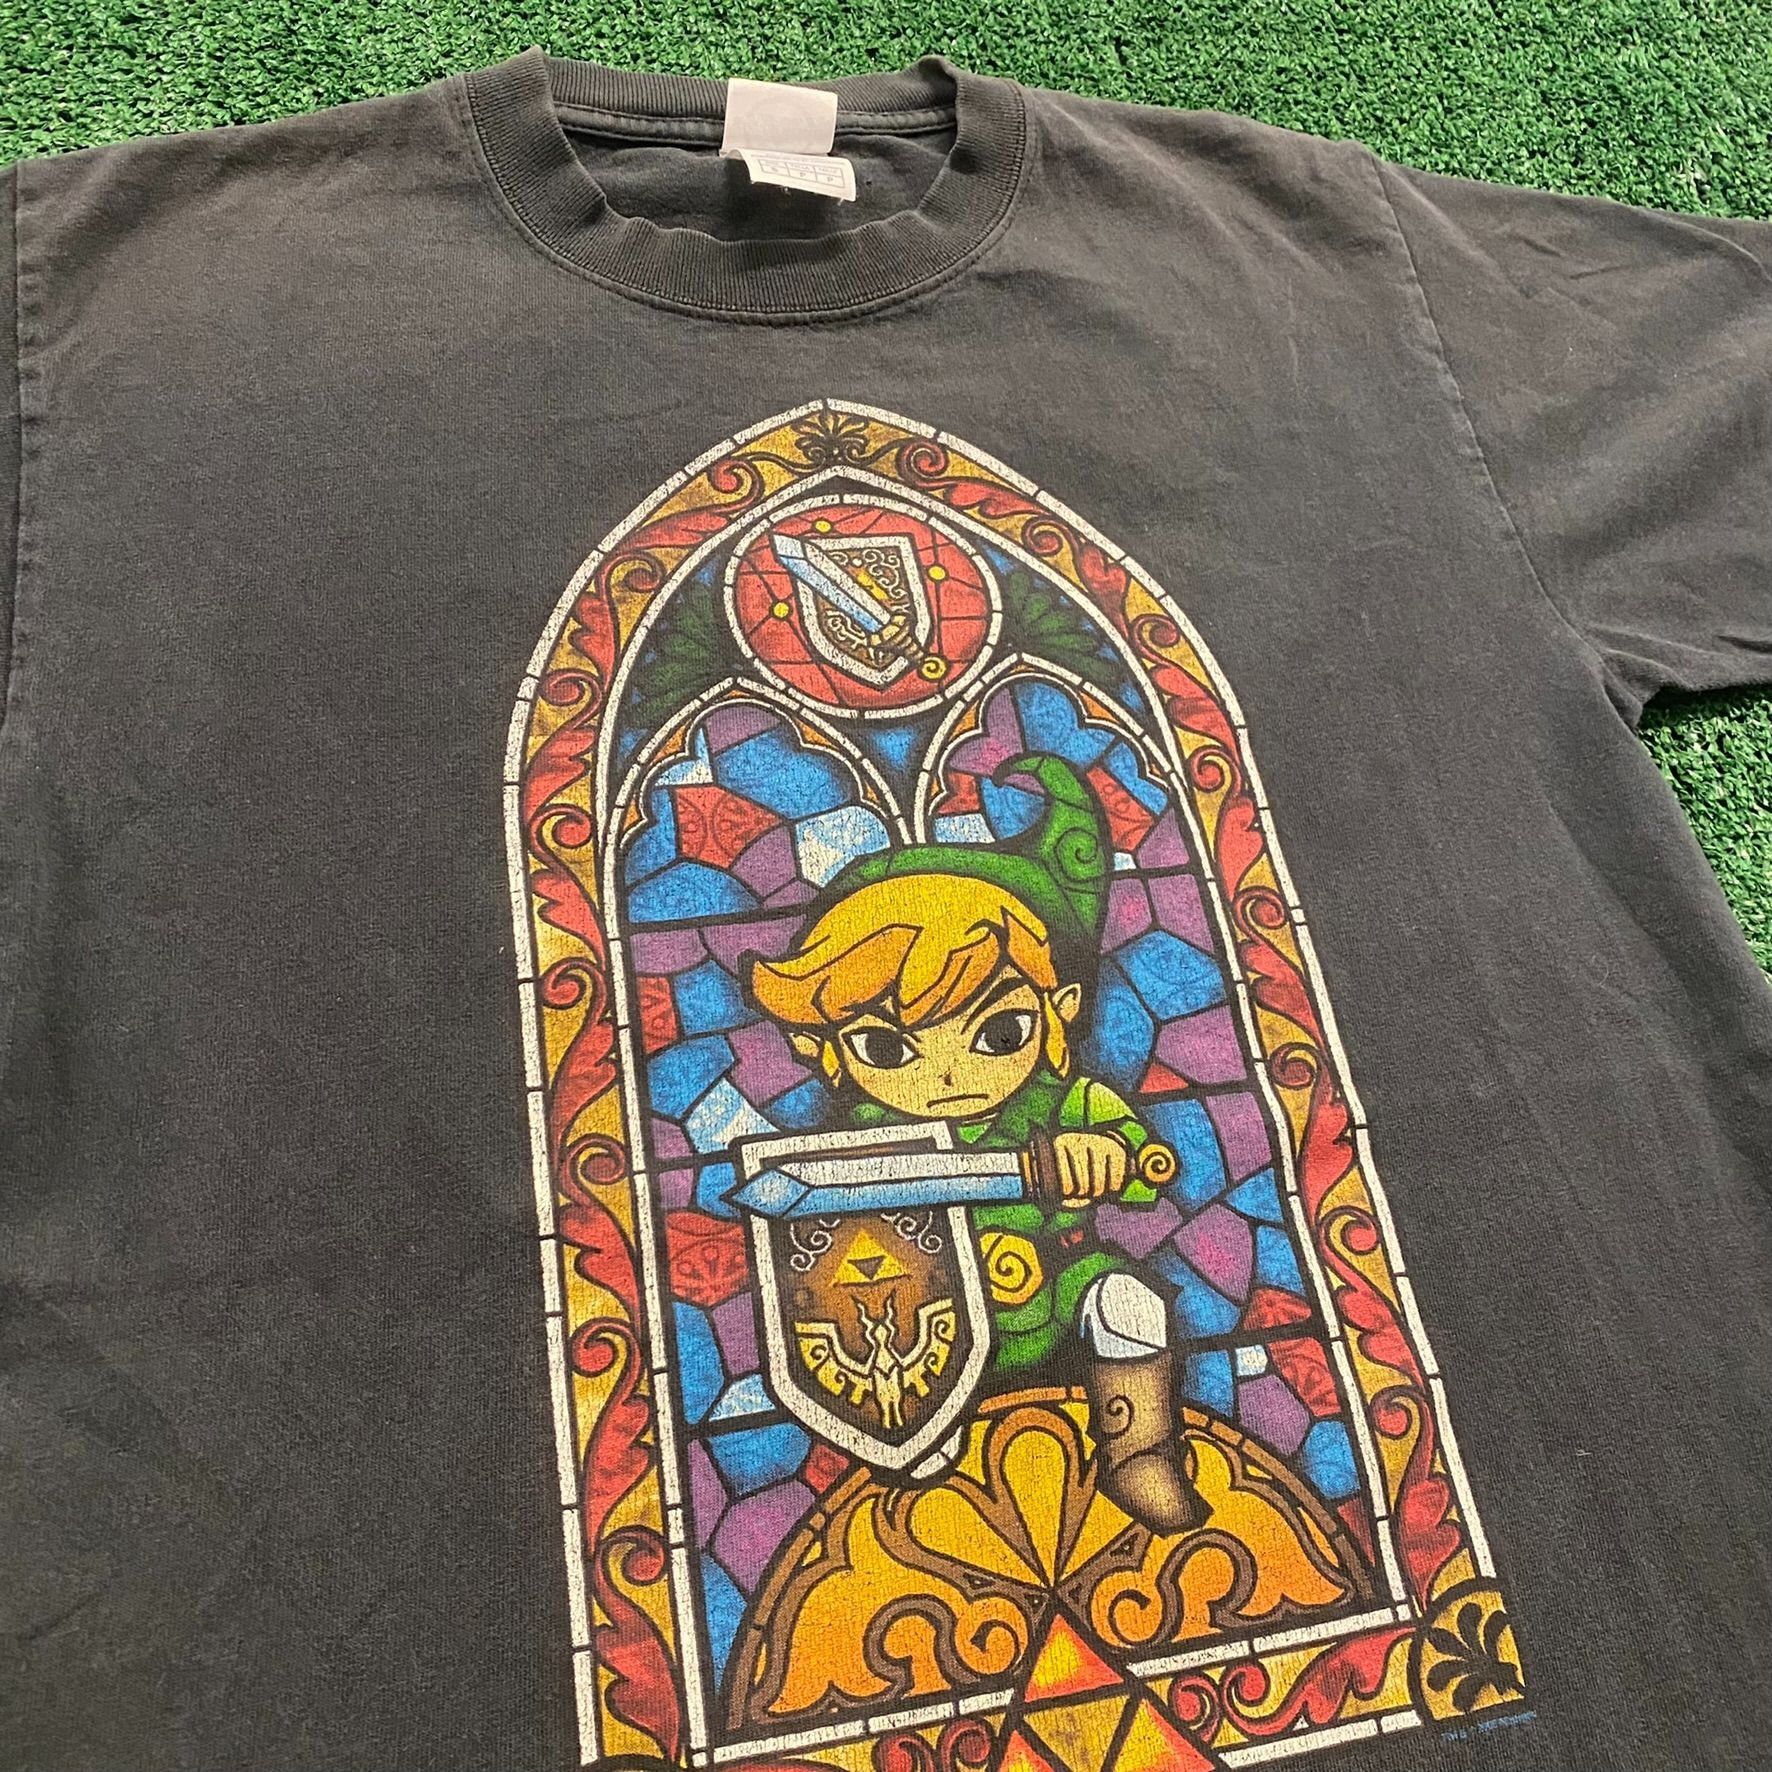 Vintage Nintendo Link Vintage Legend of Zelda T-Shirt Size US S / EU 44-46 / 1 - 2 Preview